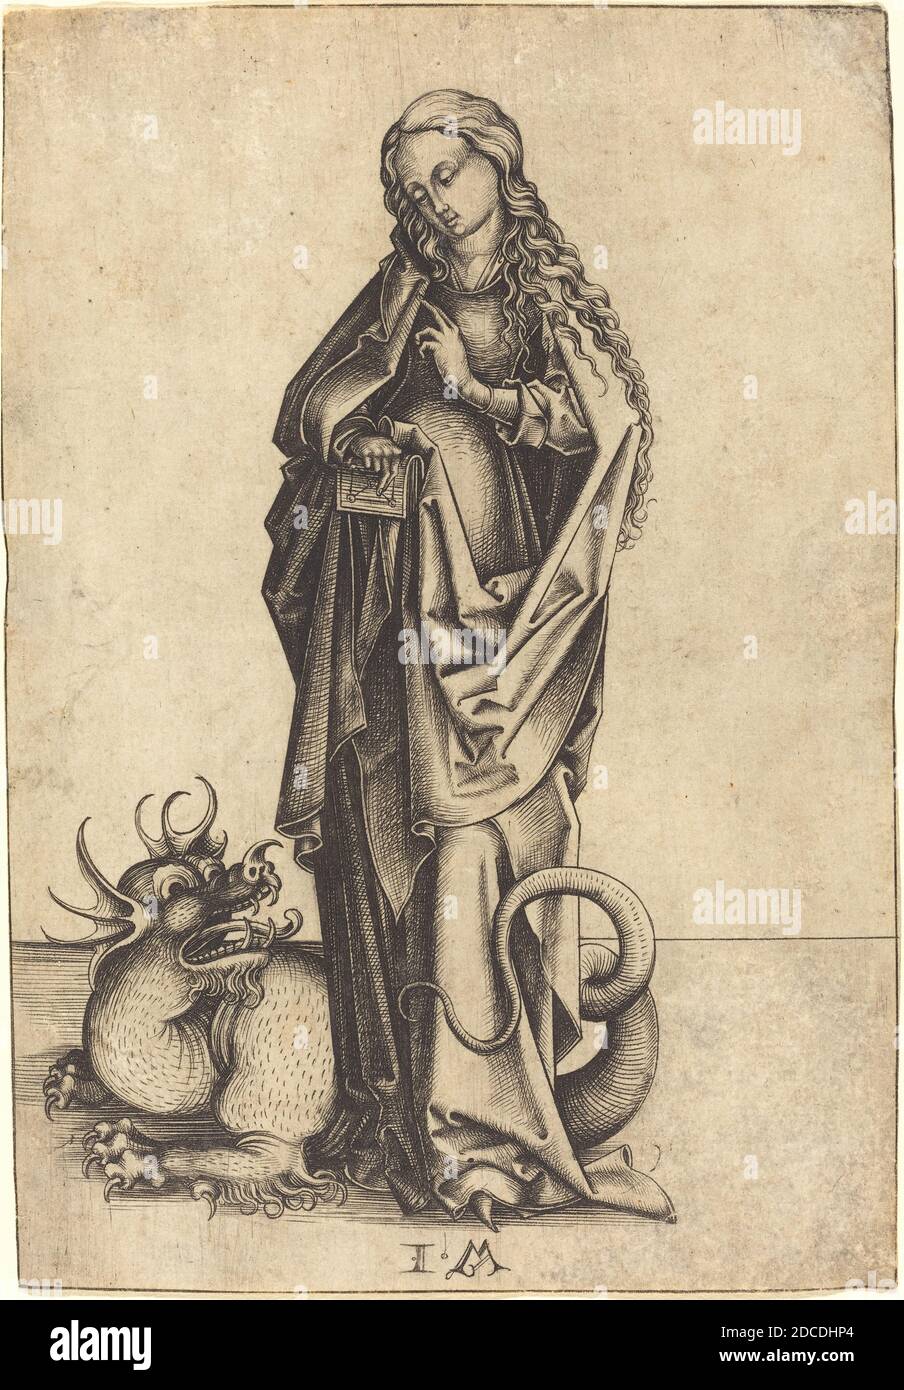 Israhel van Meckenem, (artist), German, c. 1445 - 1503, Saint Margaret, c. 1480/1490, engraving Stock Photo